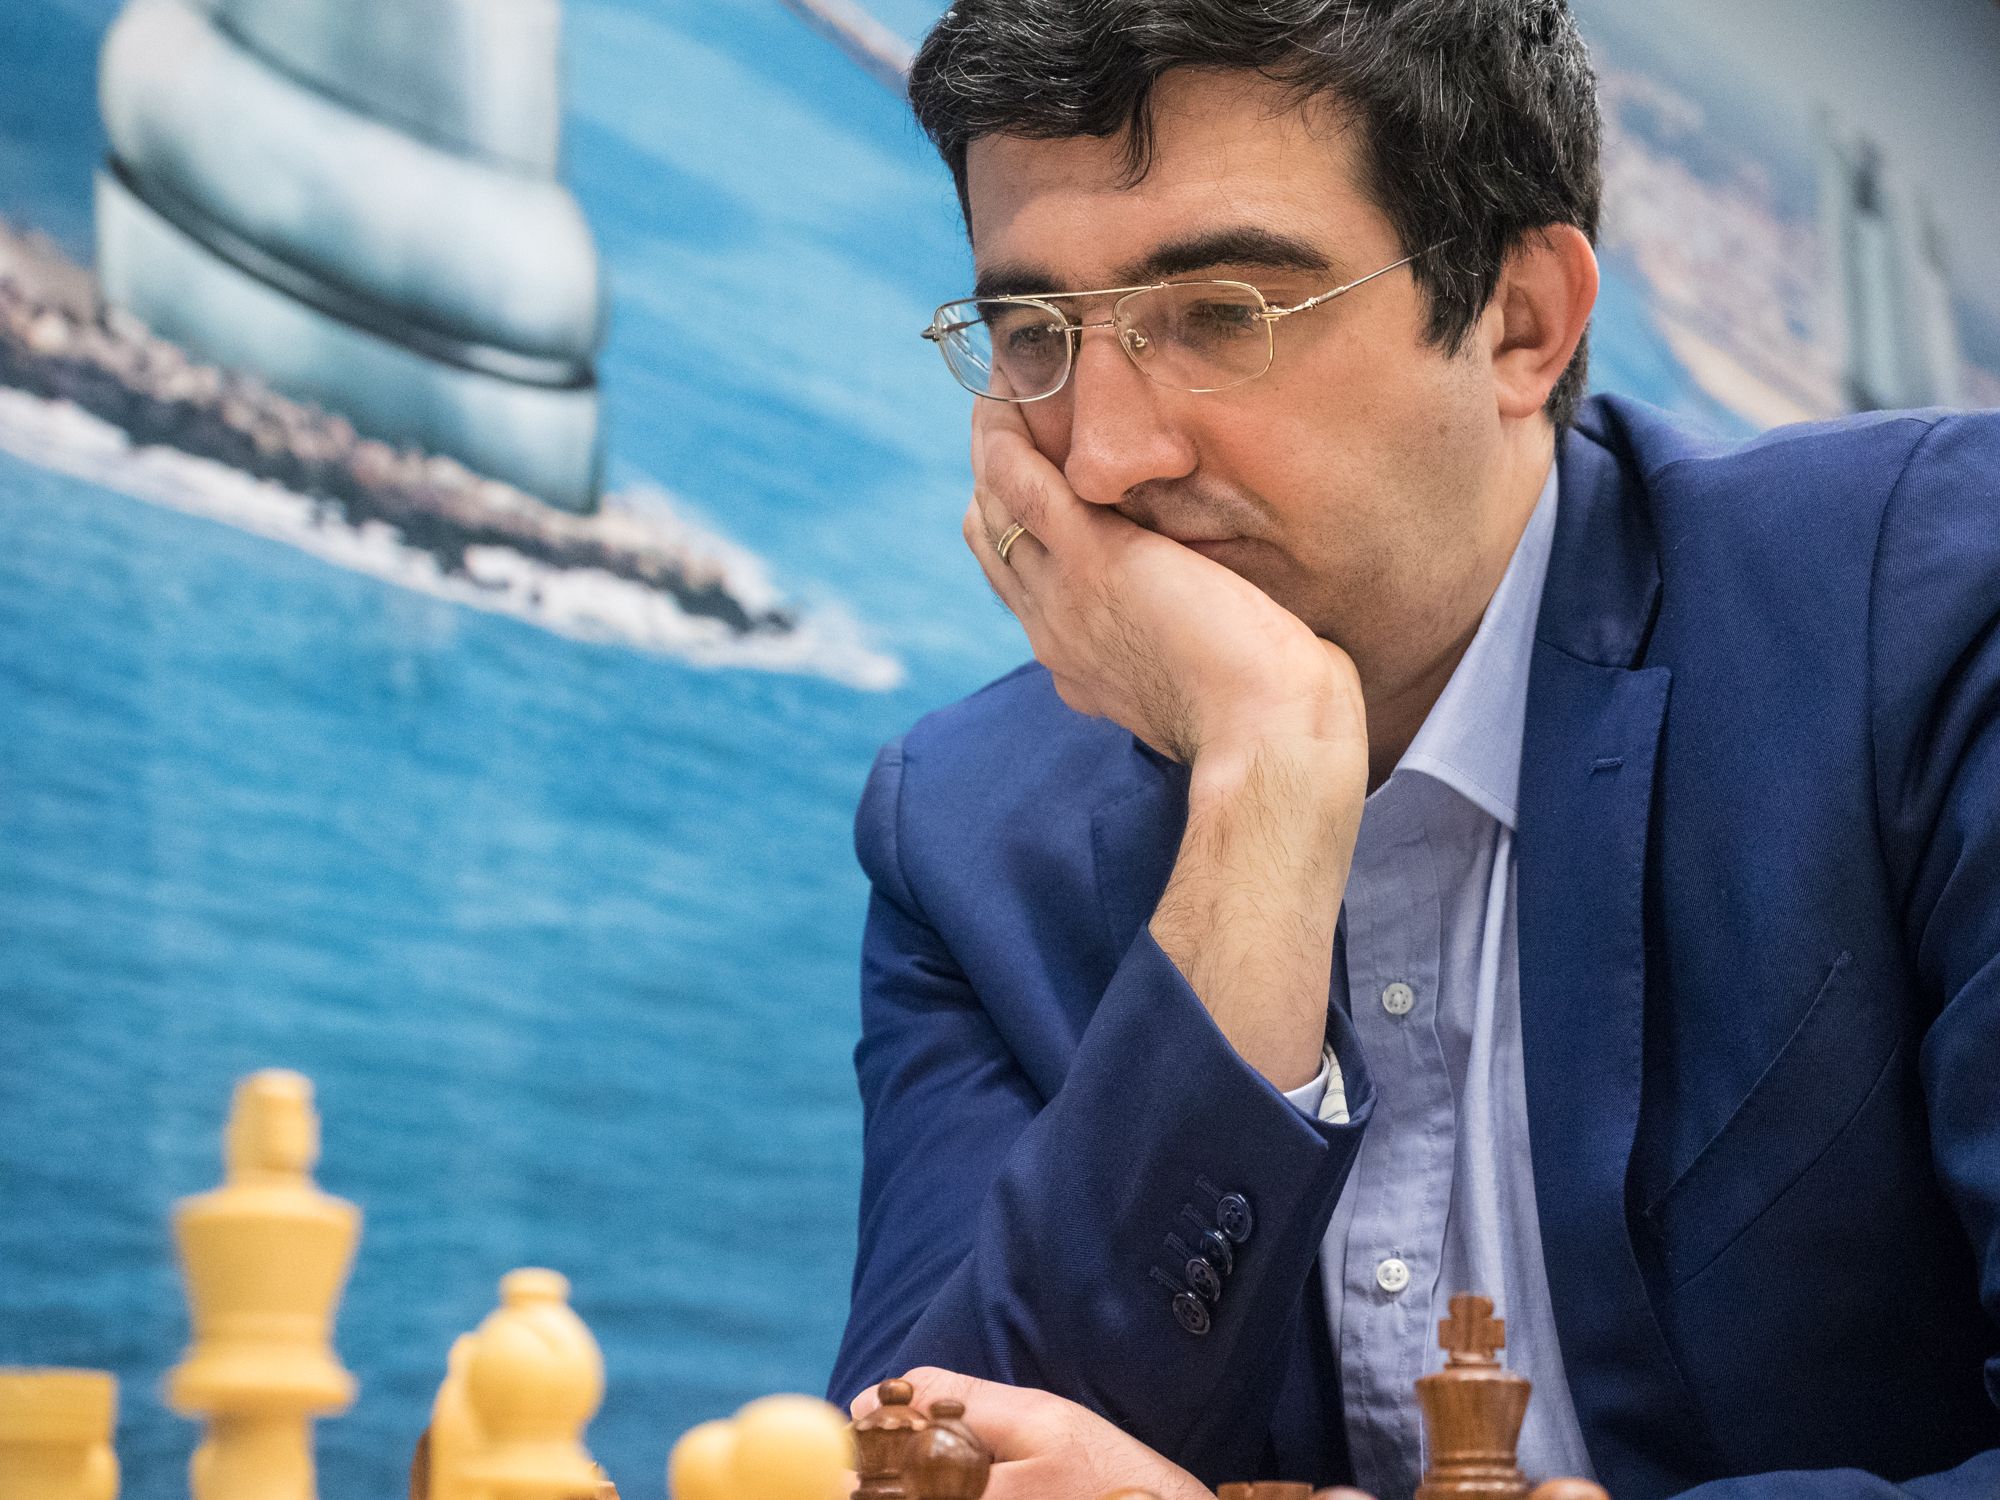 Vladimir Kramnik - Best Of Chess